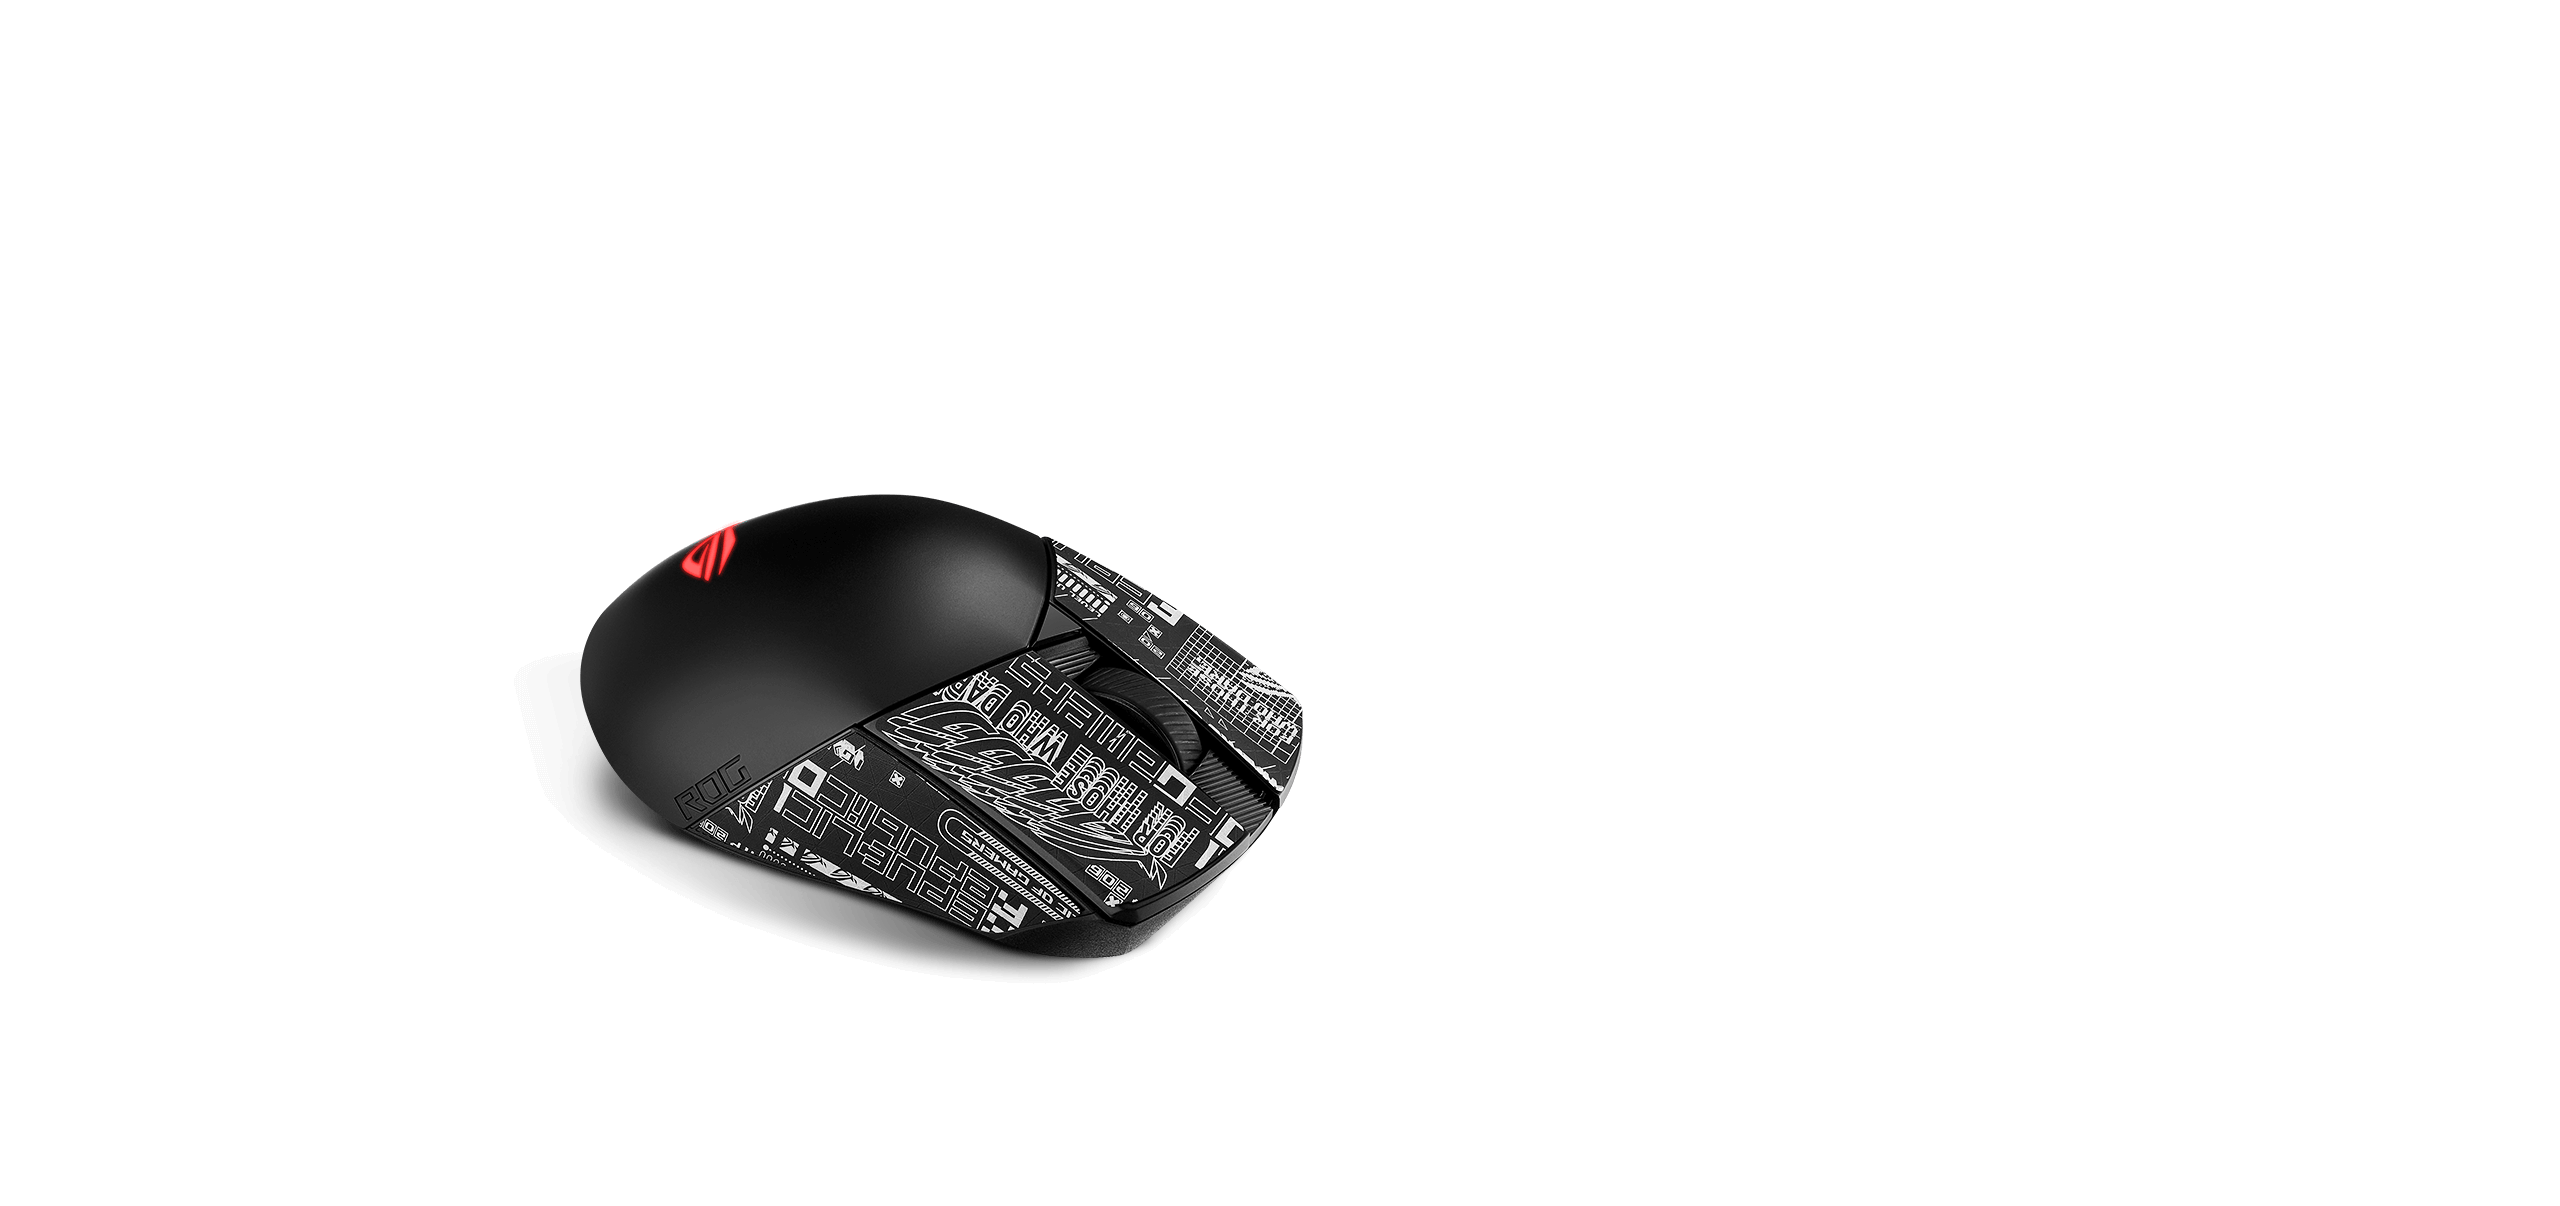 Czarna mysz ROG Gladius III Wireless AimPoint z taśmą poprawiającą chwyt z wzorem ROG